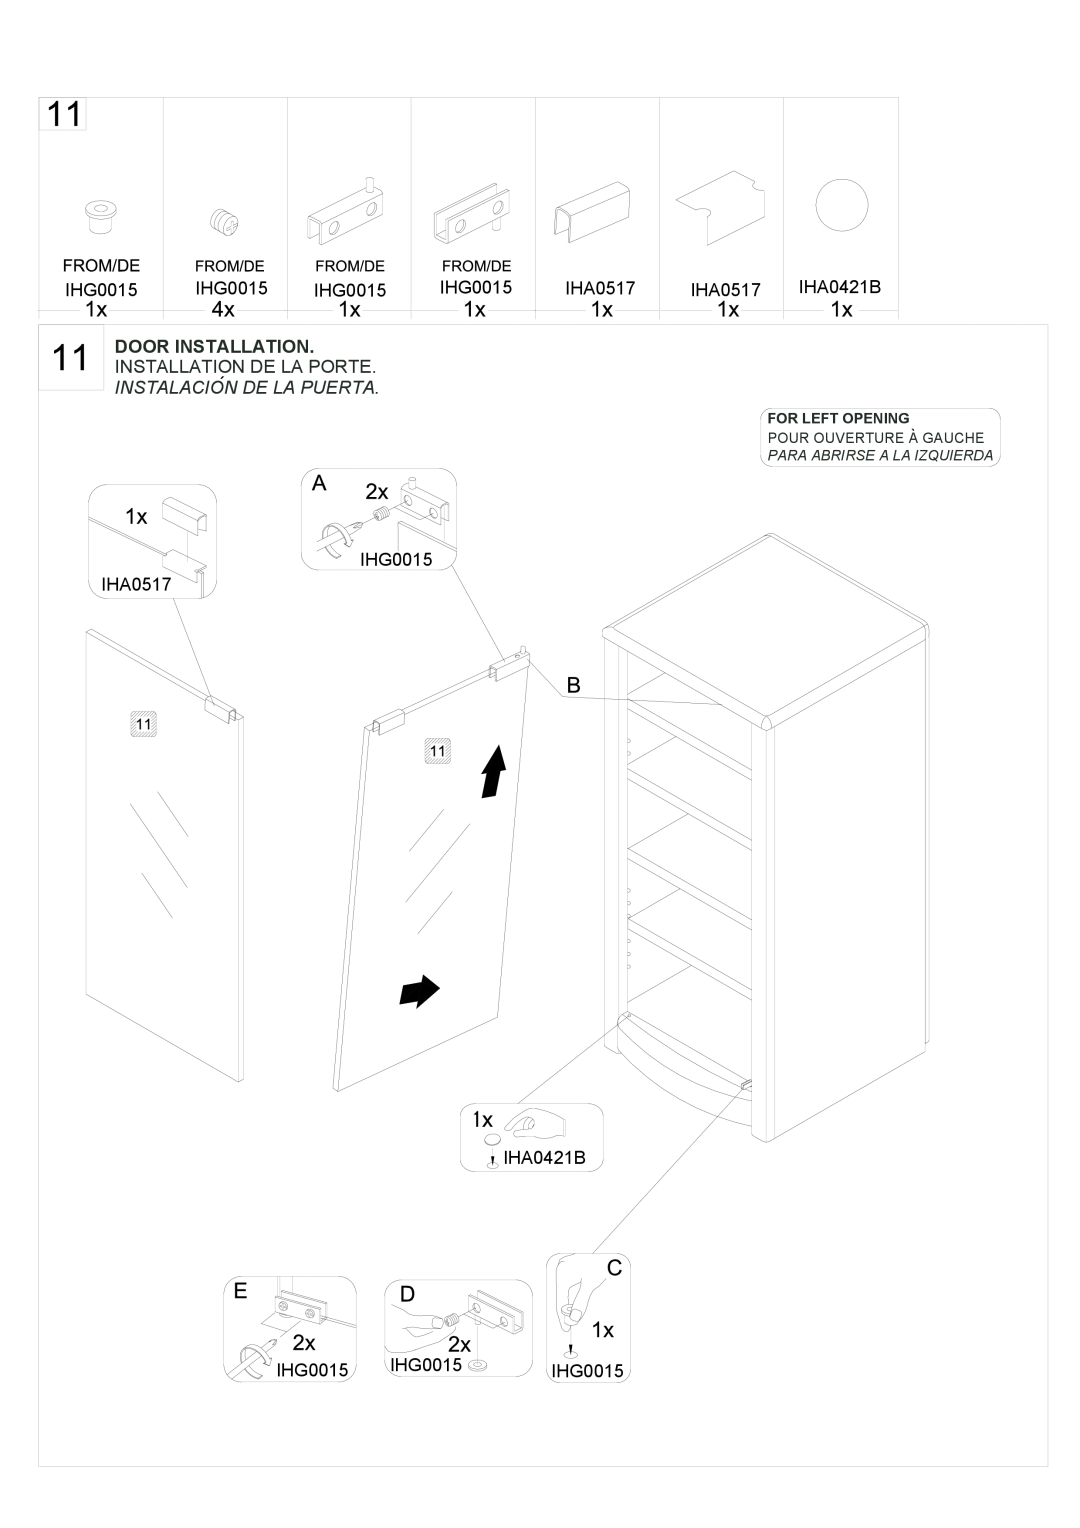 Tech Craft SF50 manual IHG0015, Door Installation, Instalacion De La Puerta 